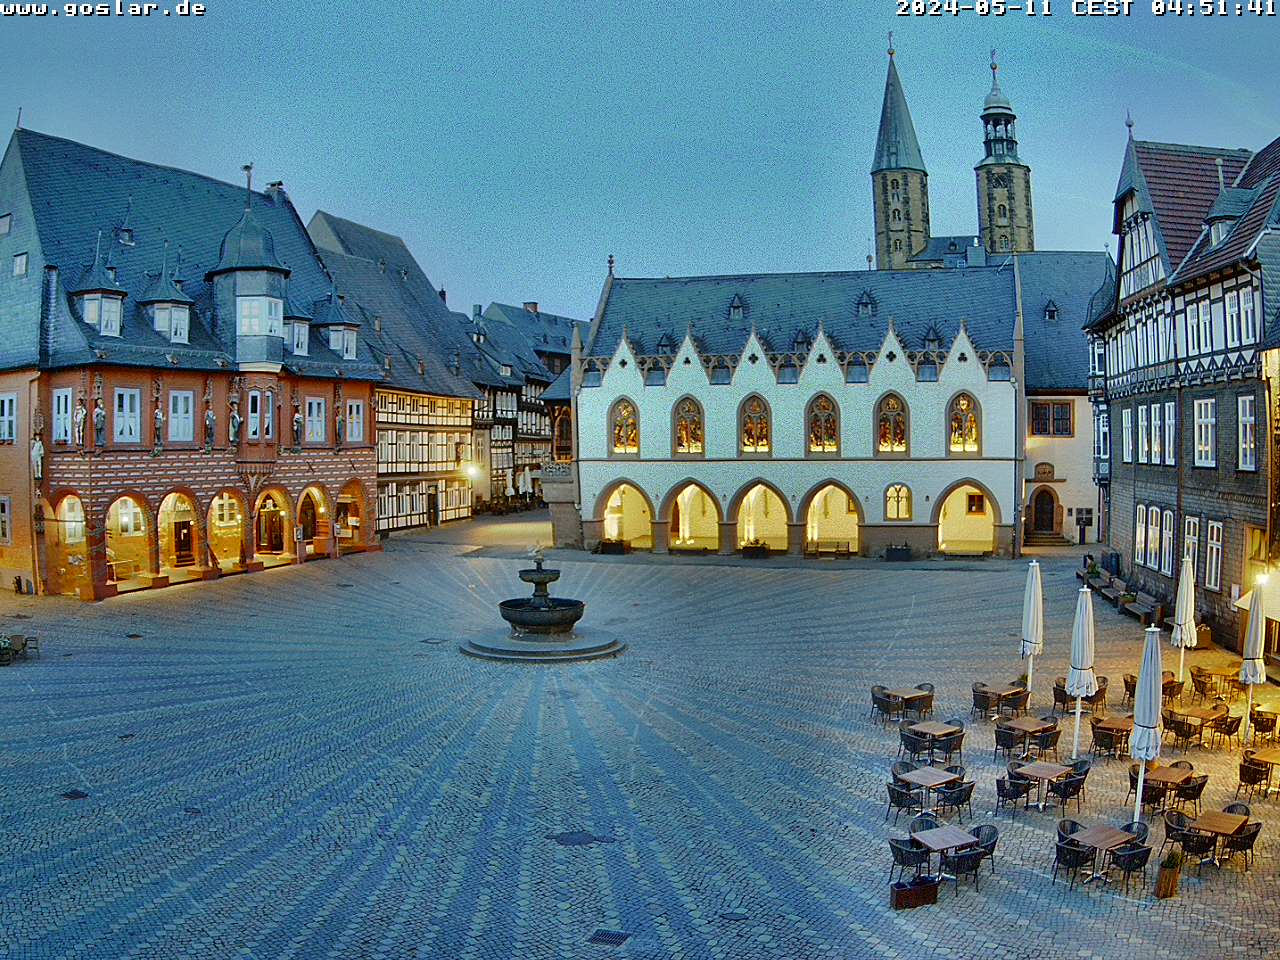 Goslar Tir. 04:51